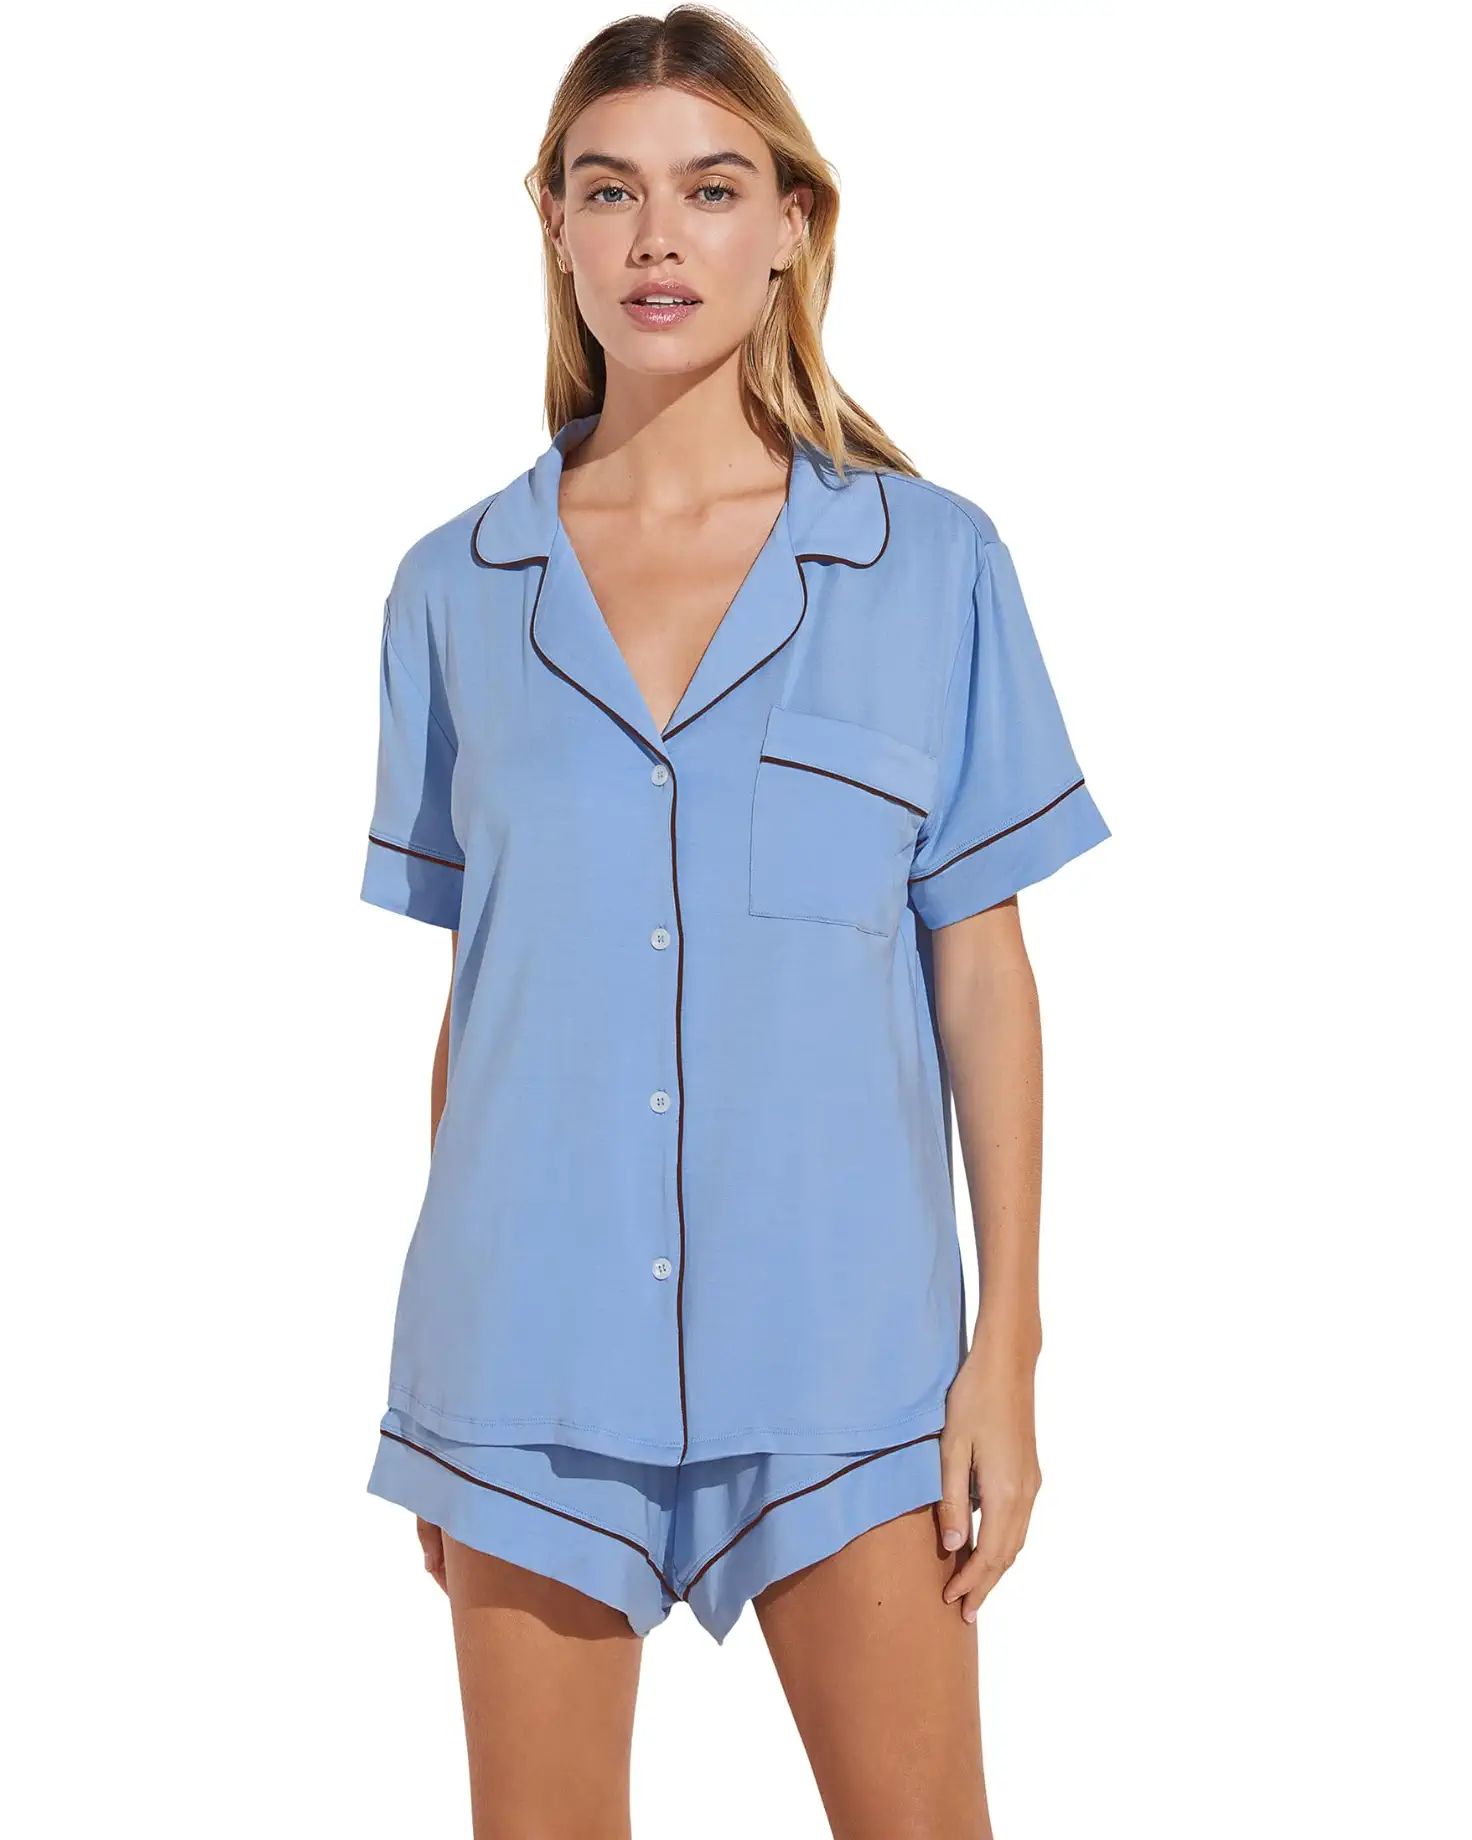 Gisele - The Relaxed Short Pajama Set | Zappos